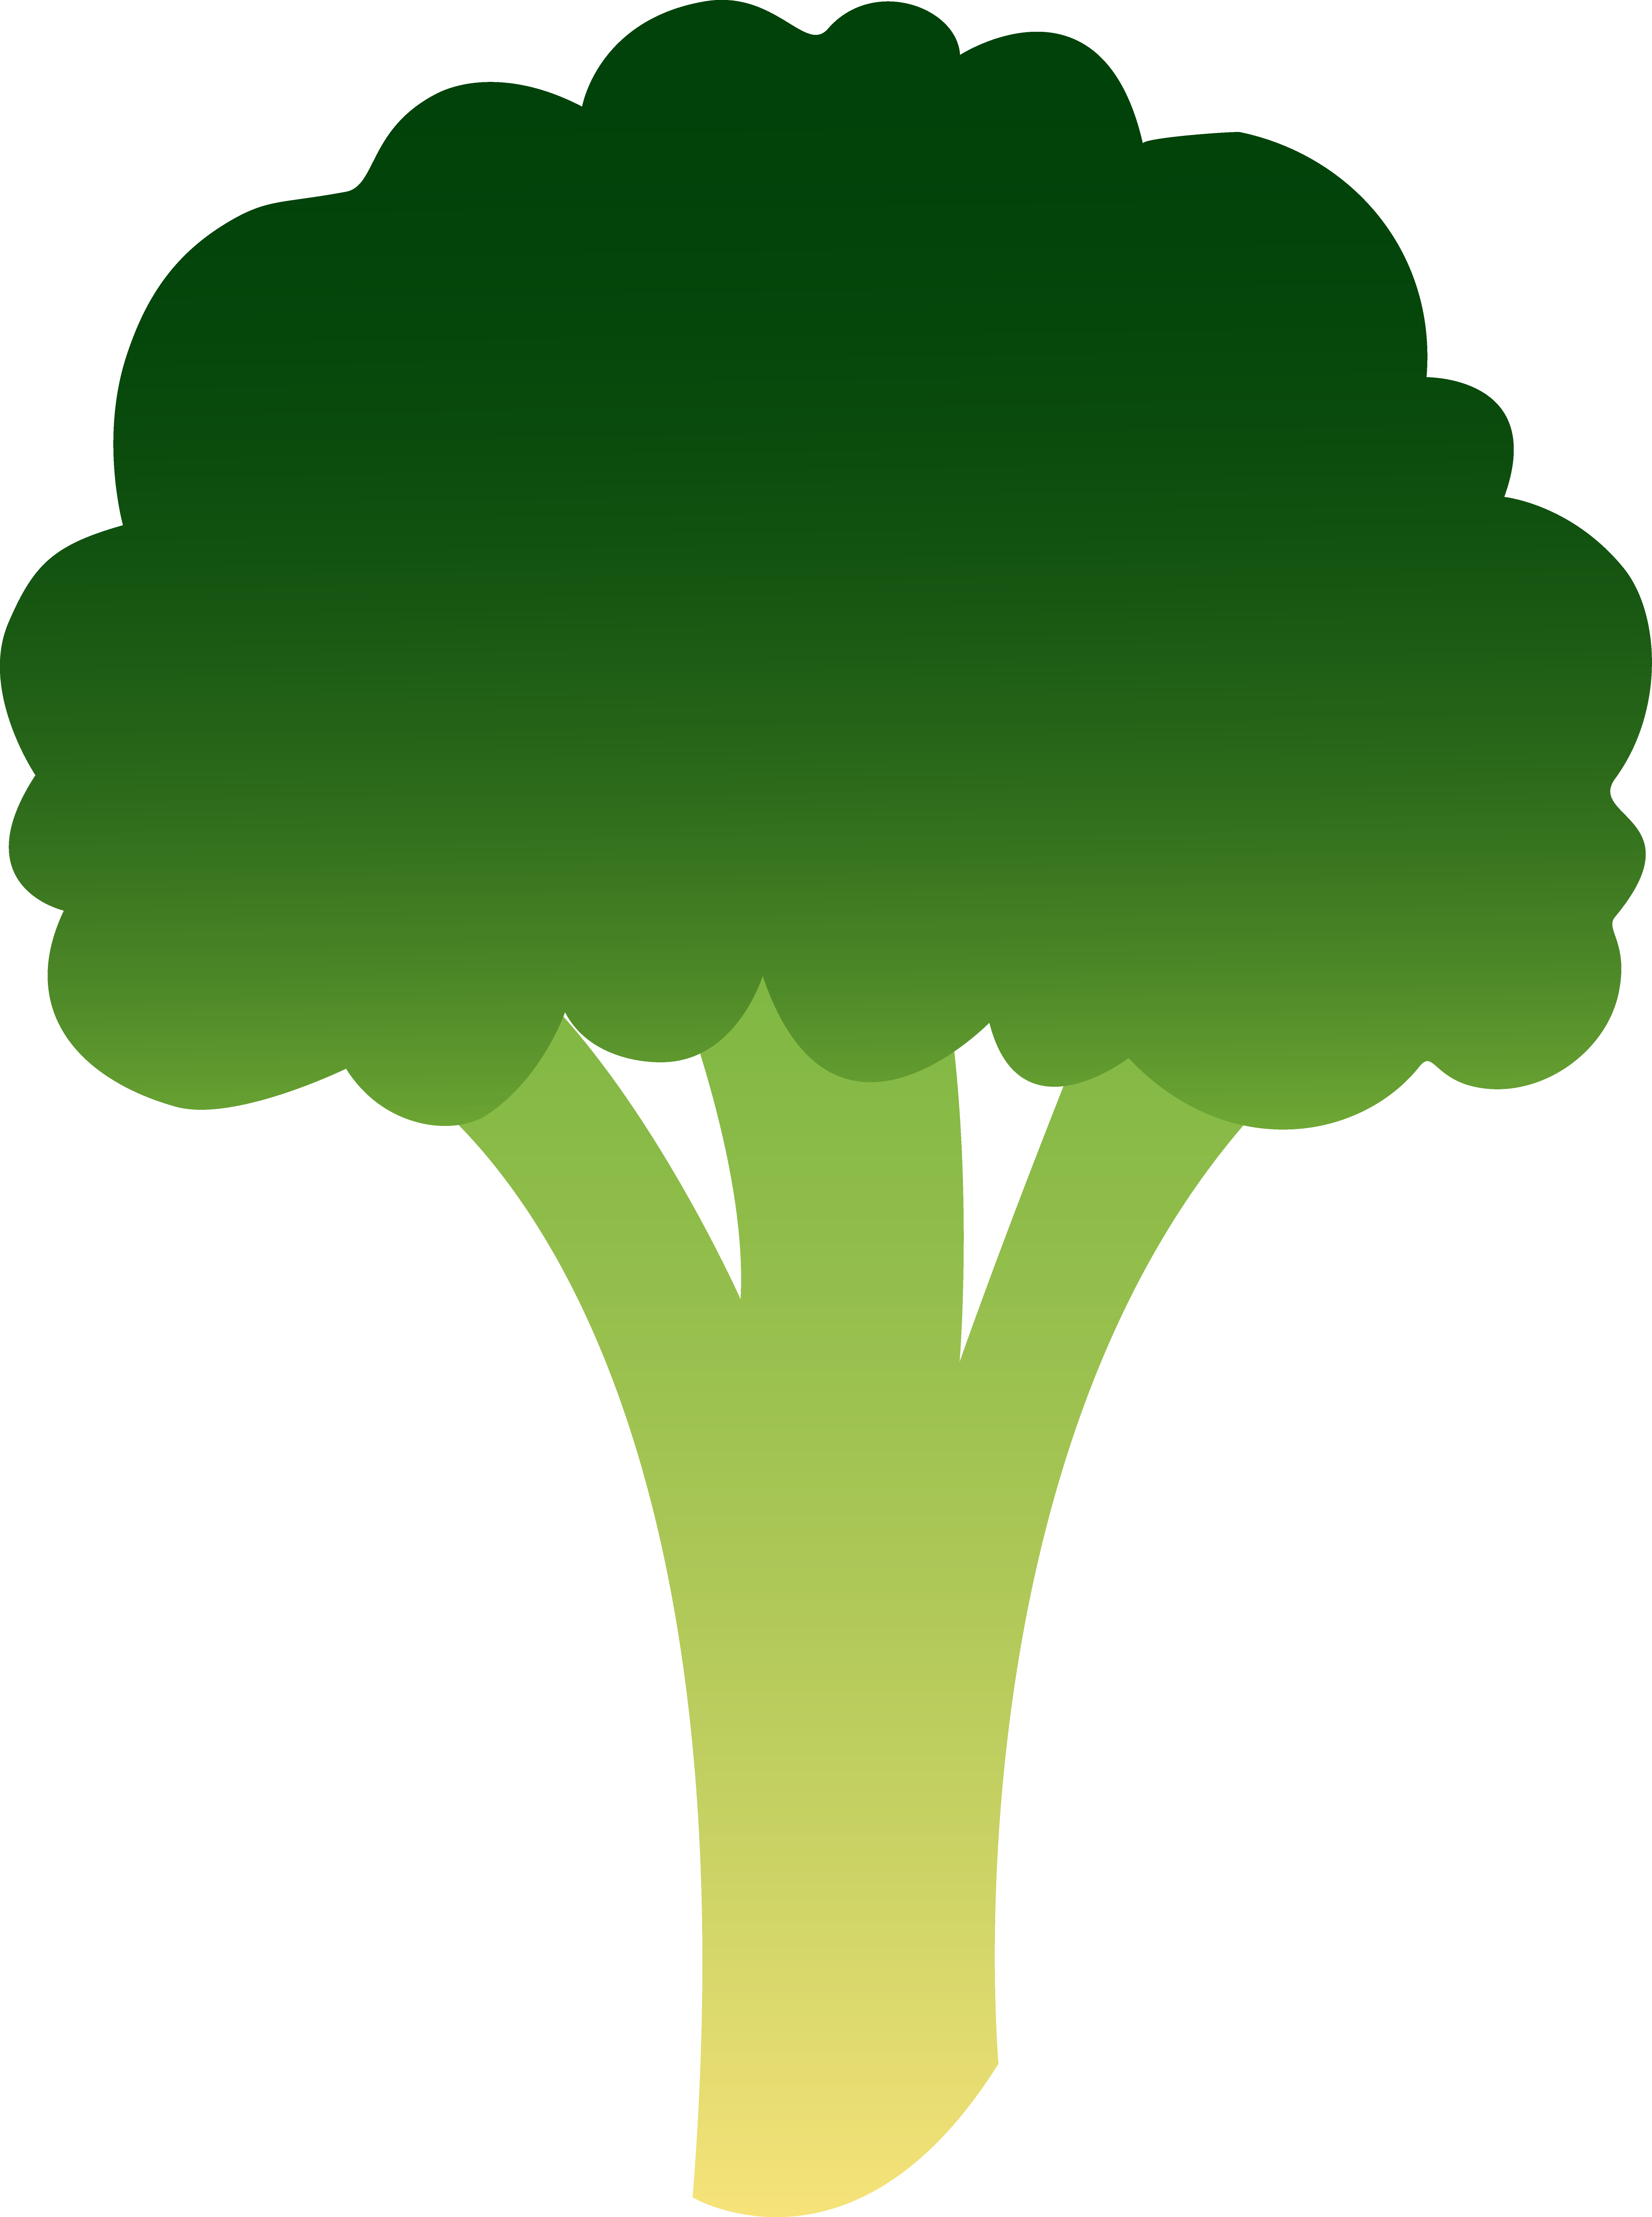 Broccoli 20clipart - Broccoli Clipart Easy (3793x5090)